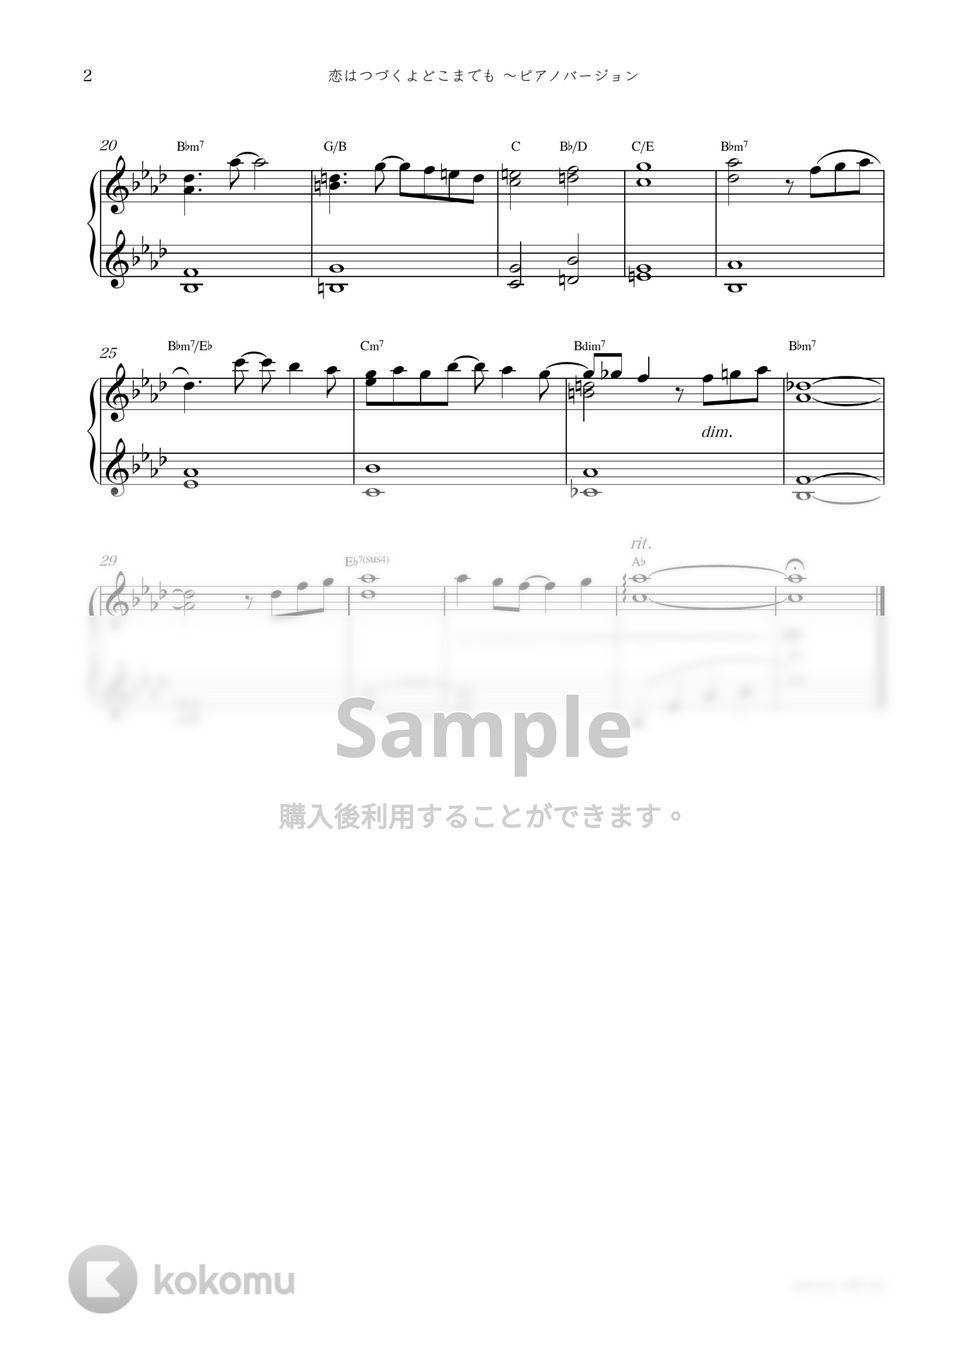 ドラマ『恋はつづくよどこまでも』OST - 恋はつづくよどこまでも 〜ピアノバージョン by sammy